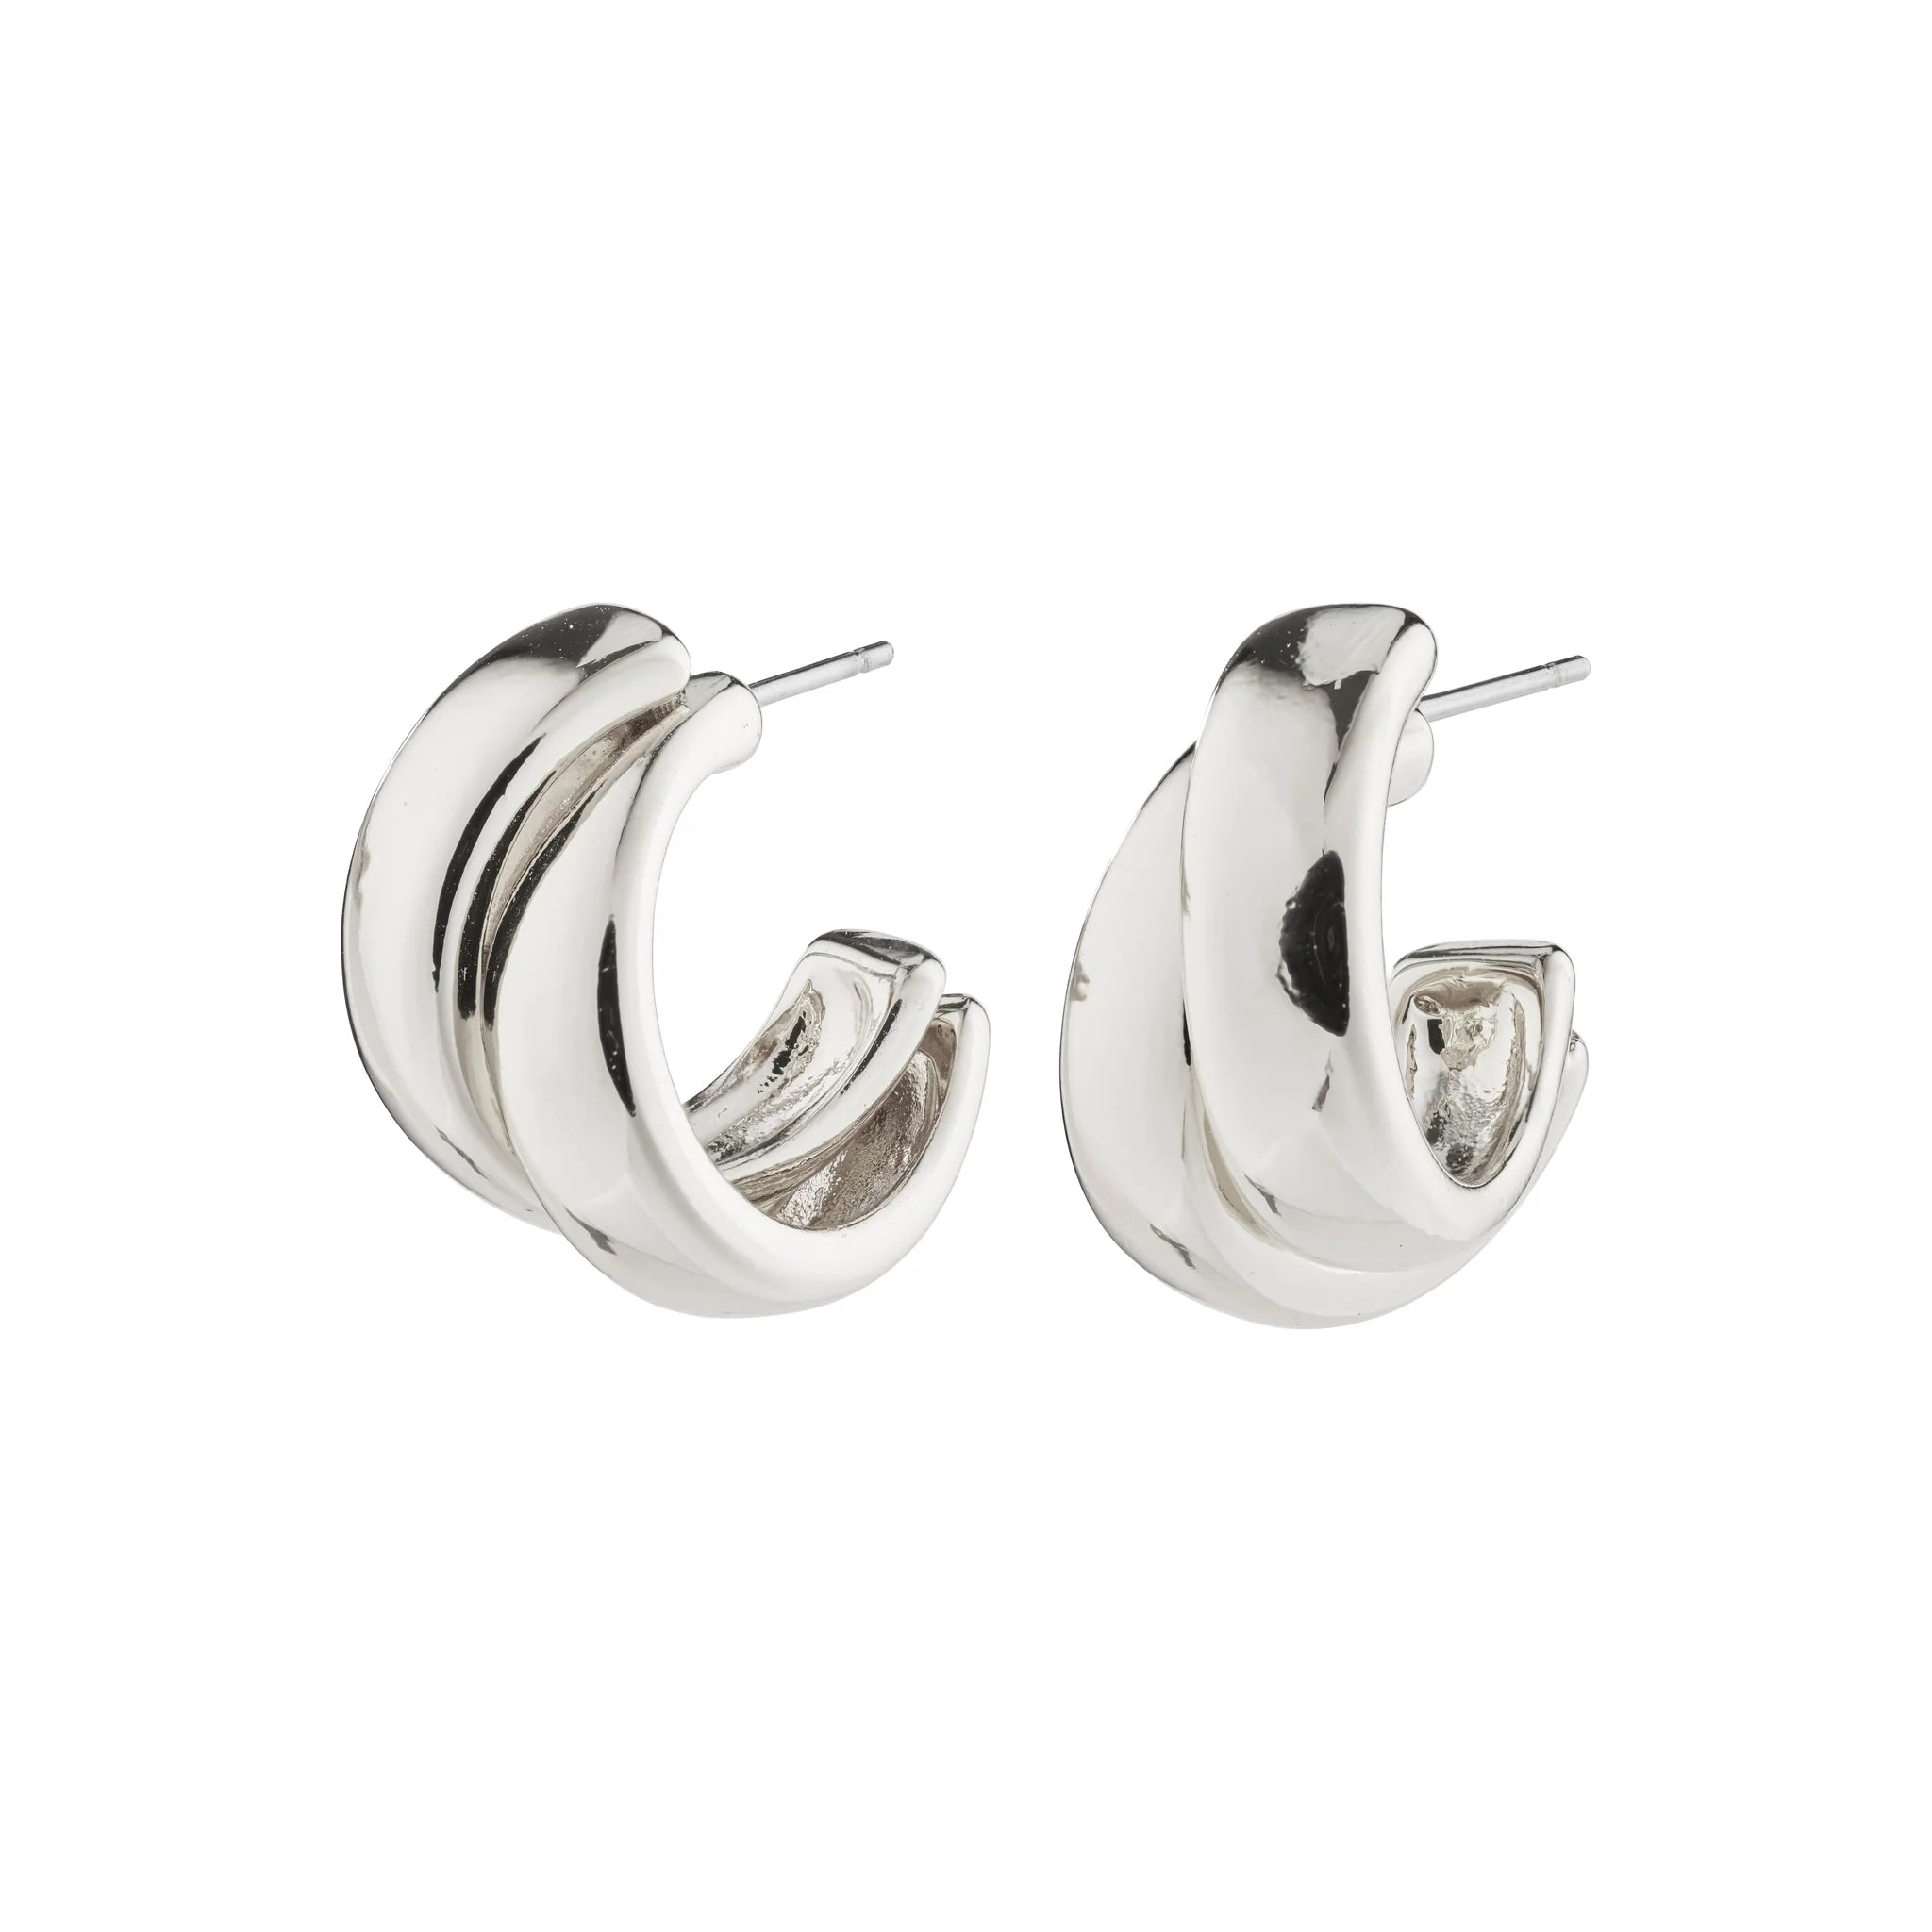 ORIT earrings silver-plated